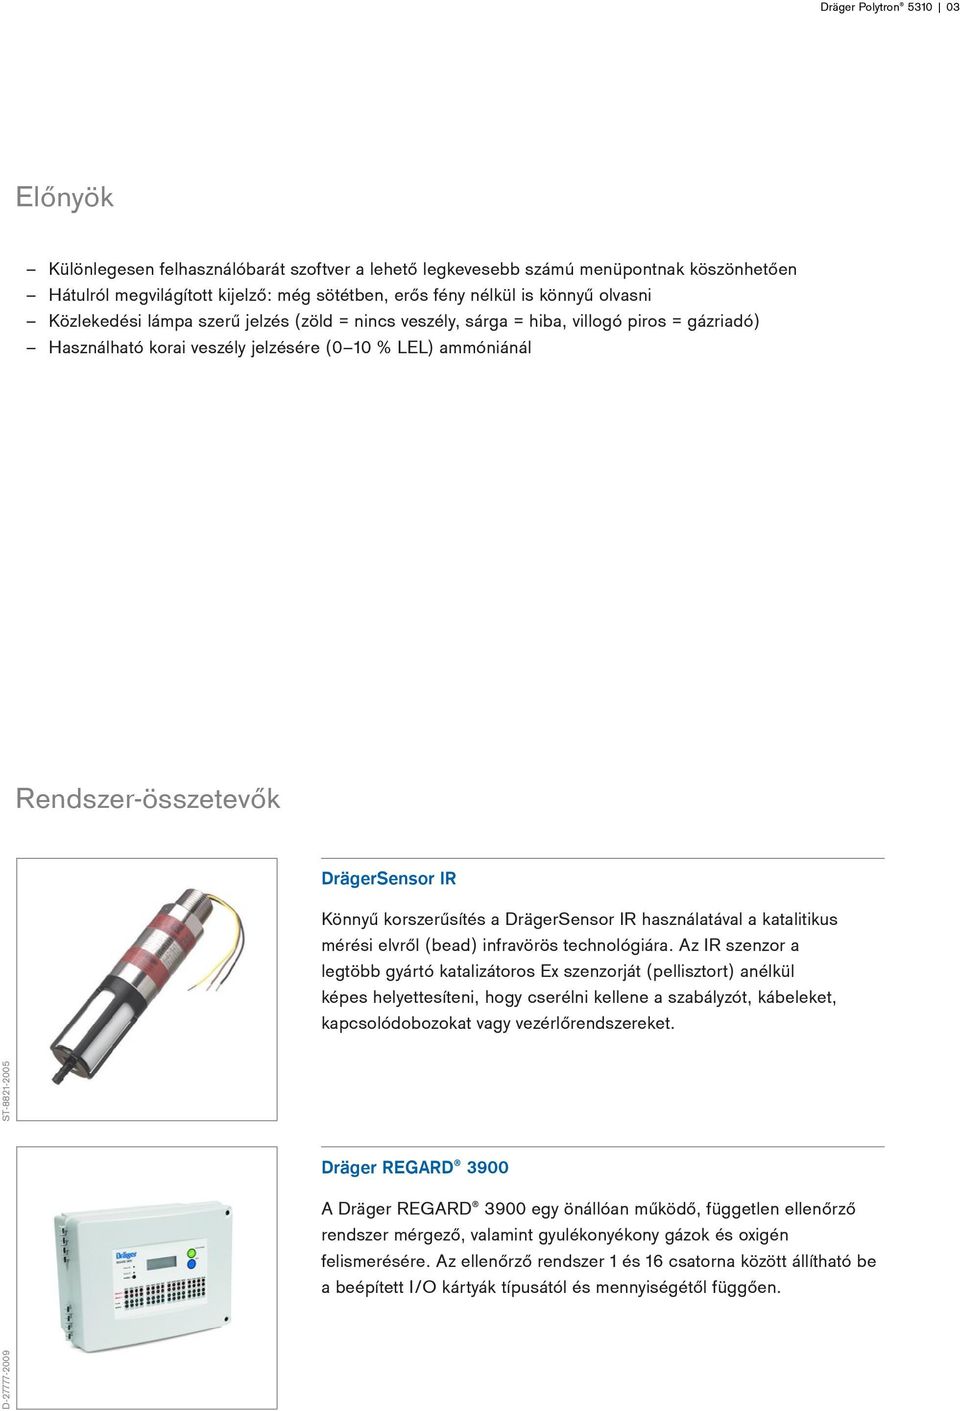 Könnyű korszerűsítés a DrägerSensor IR használatával a katalitikus mérési elvről (bead) infravörös technológiára.